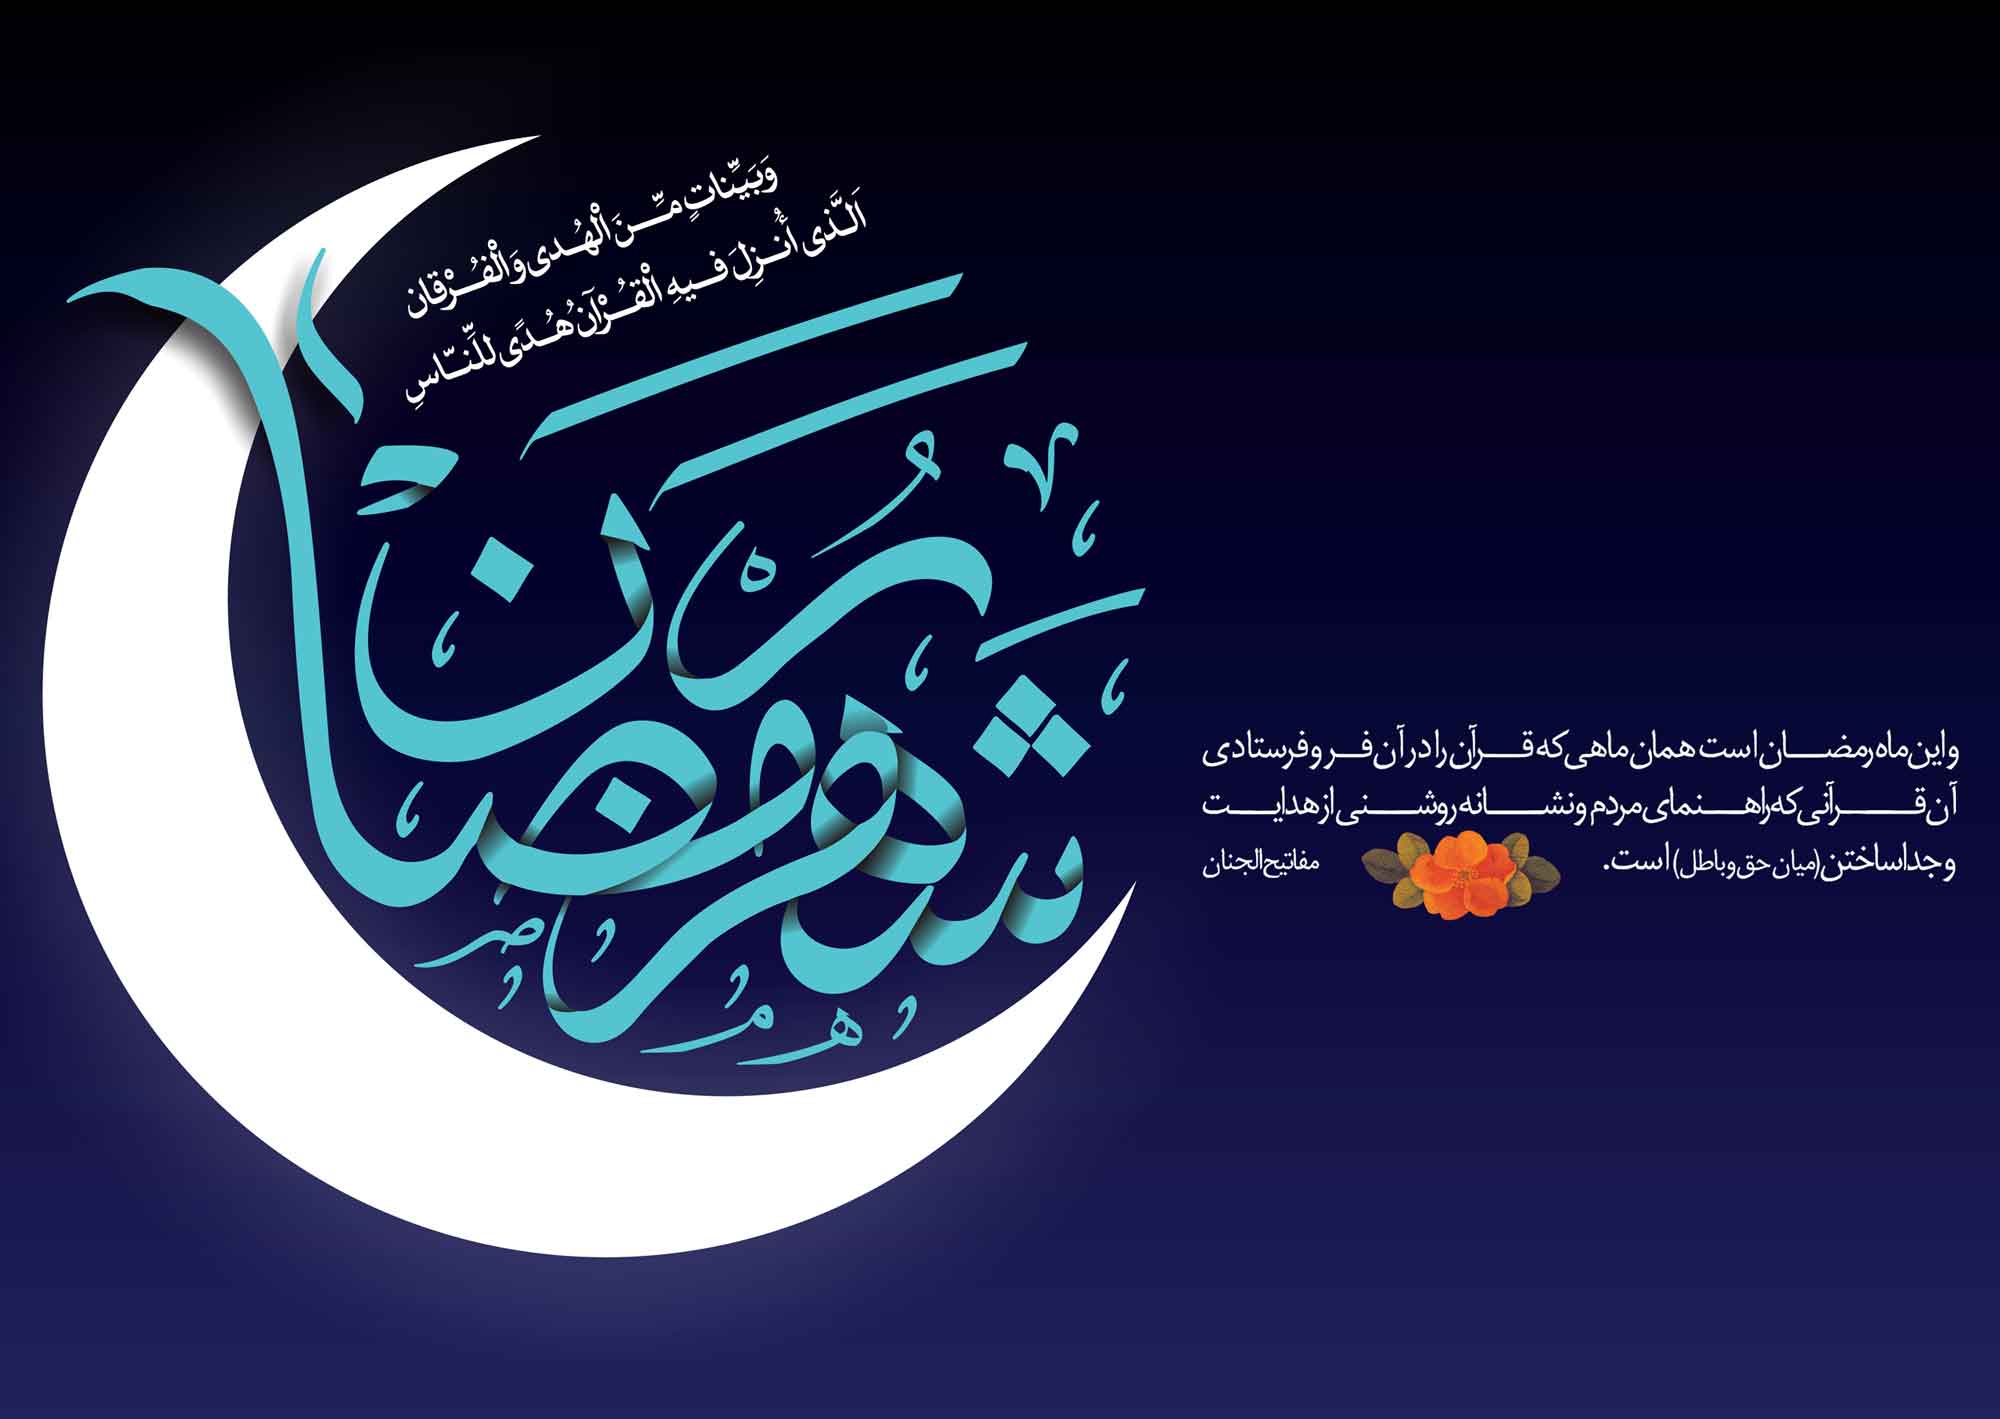 حلول ماه مبارک رمضان، ماه رحمت و برکت و غفران مبارک باد